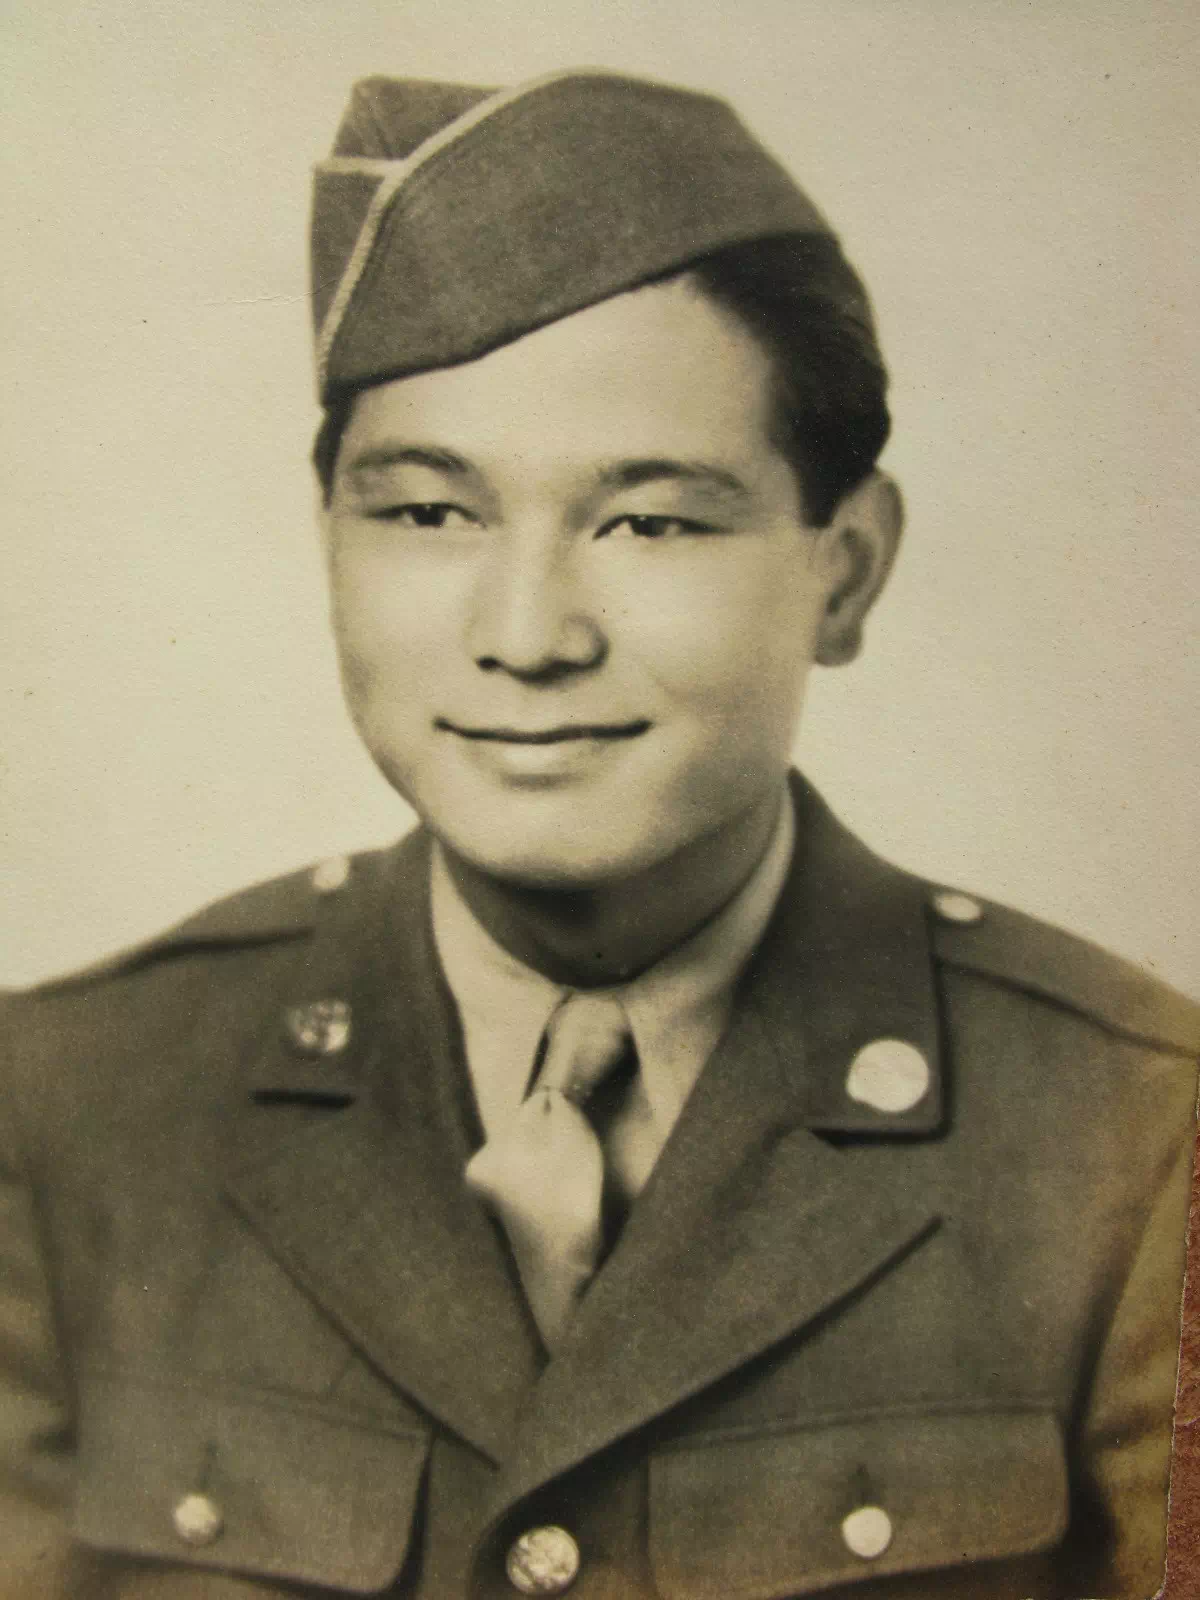 ダンの父、セイエイ・ナカソネ。太平洋戦争では米軍の通訳兵として従軍した